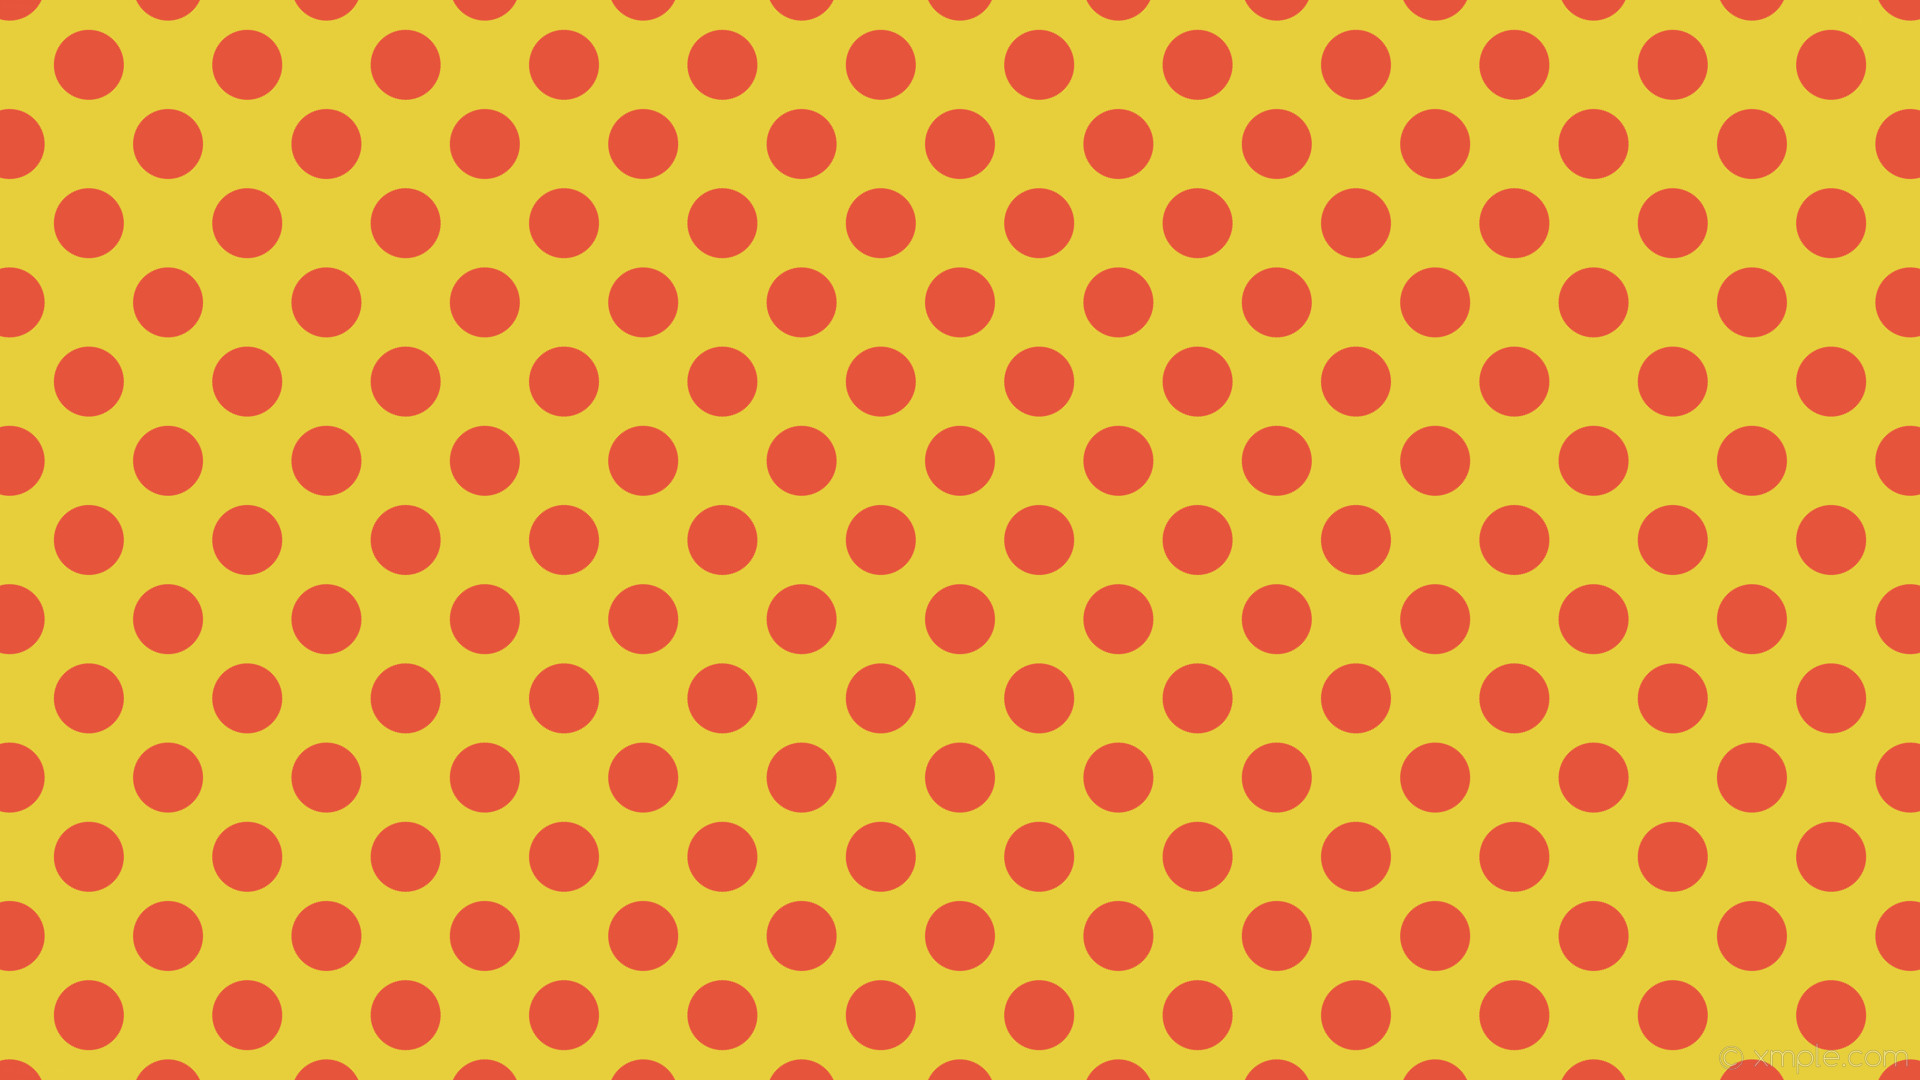 1920x1080 wallpaper yellow red polka spots dots #e7cf3c #e7543c 45Â° 70px 112px